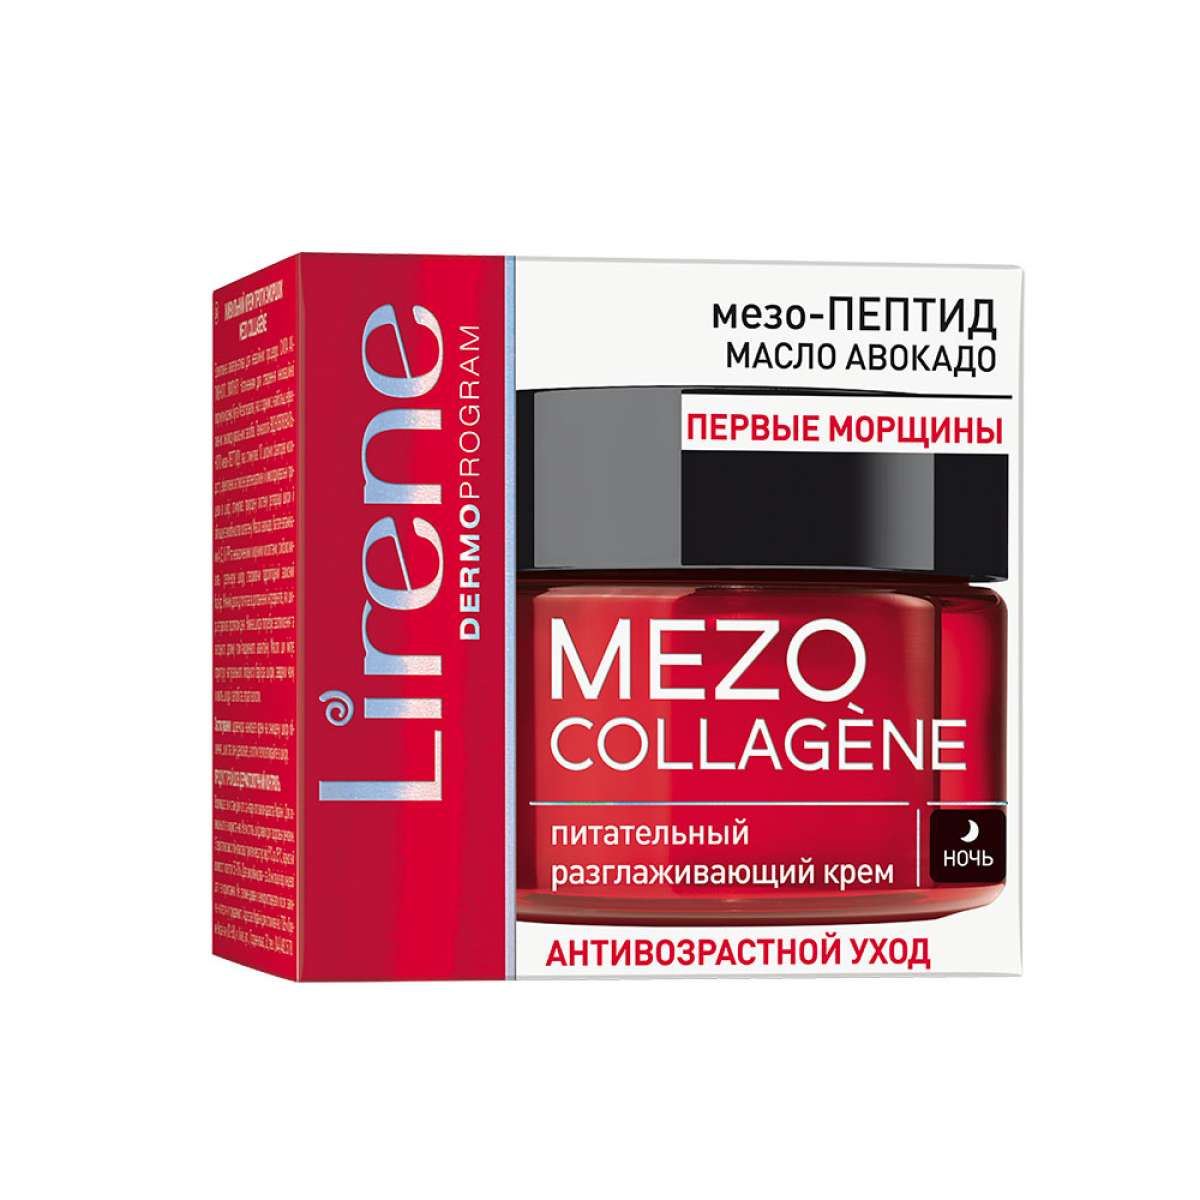 Mezo-collagene 40+ Night Cream